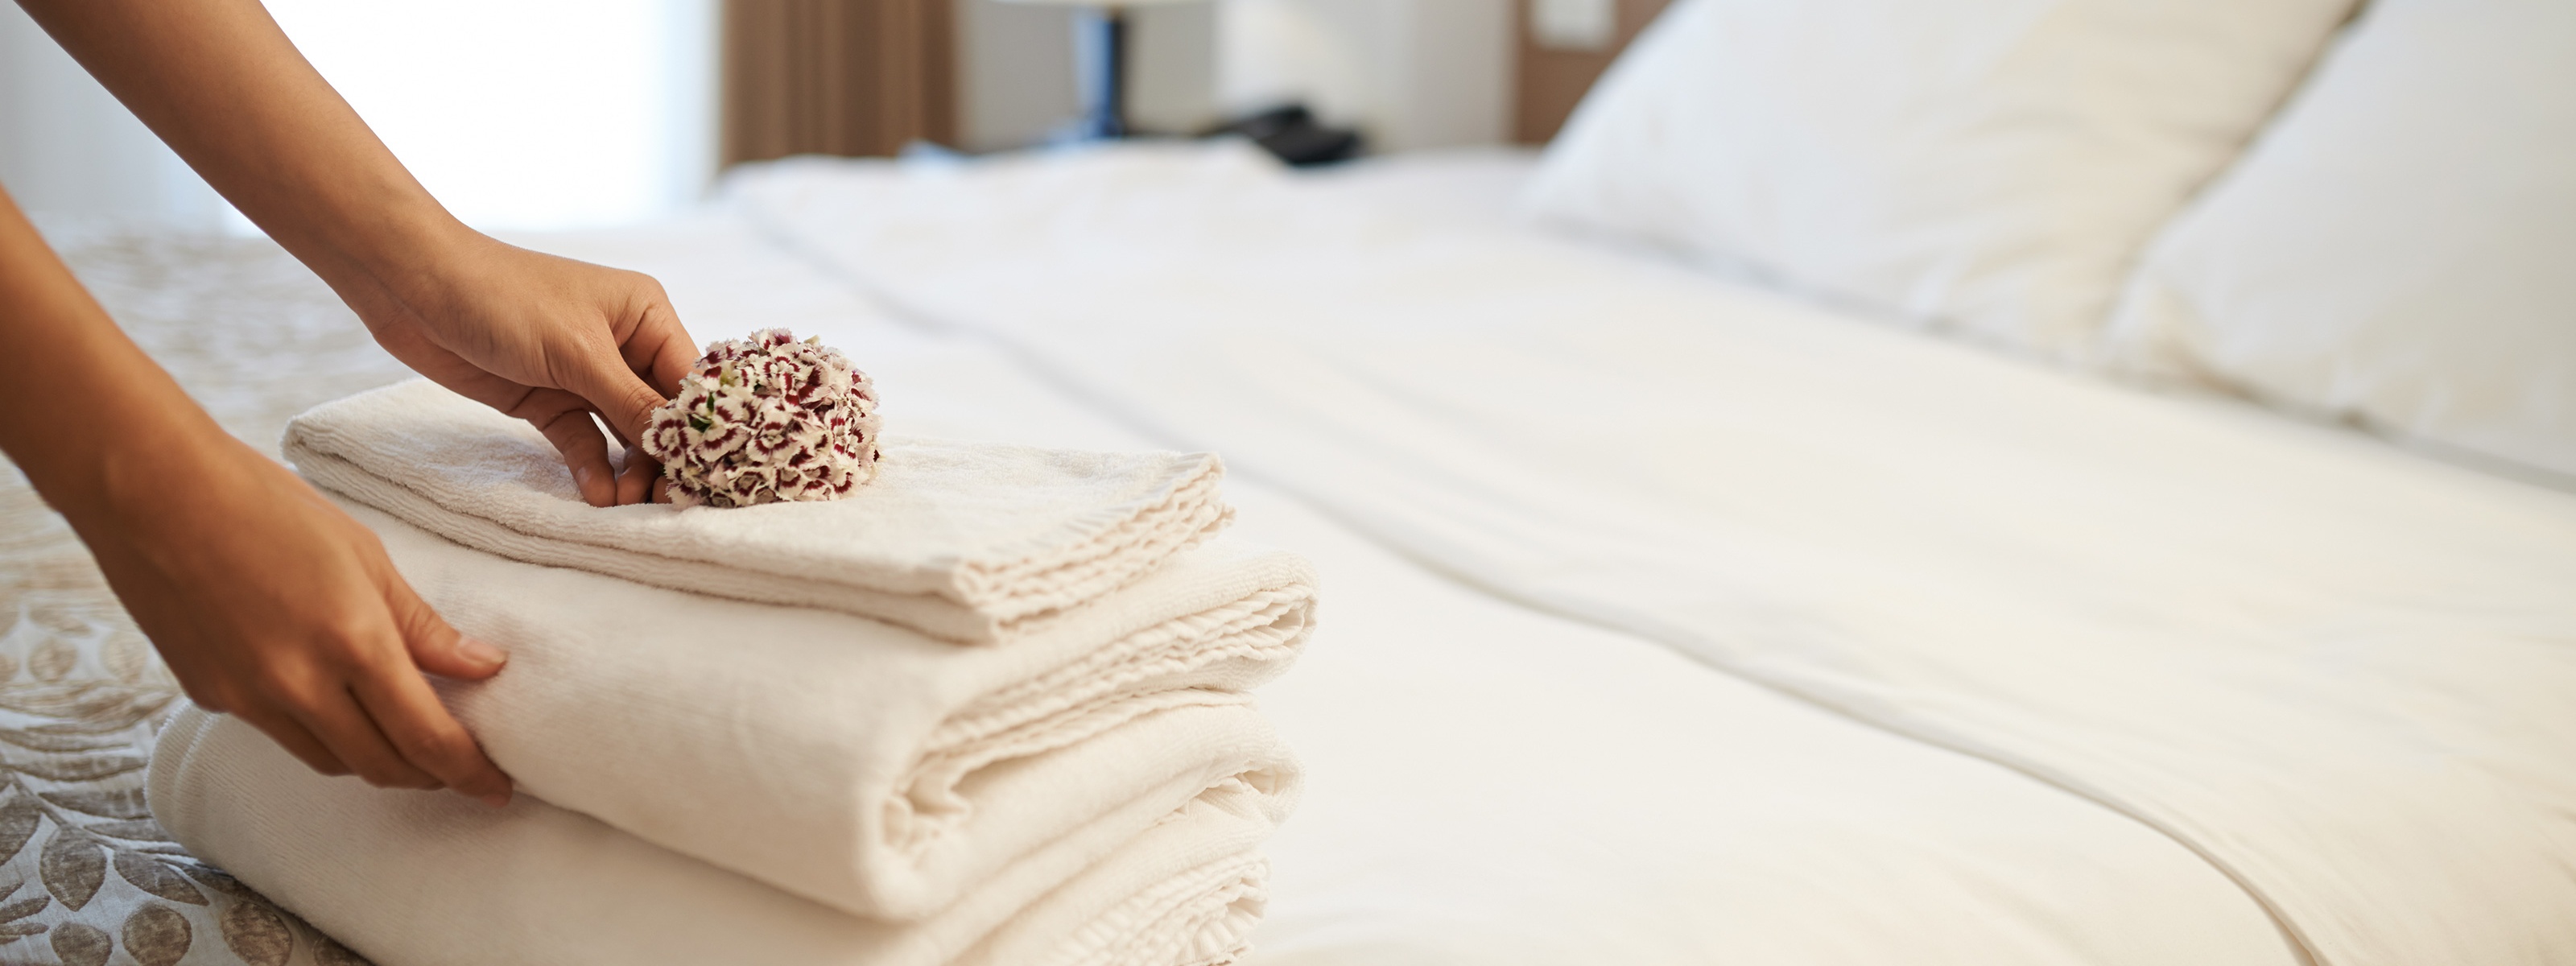 Hotelzimmer mit einem Stapel frischer Badetücher auf dem Bett